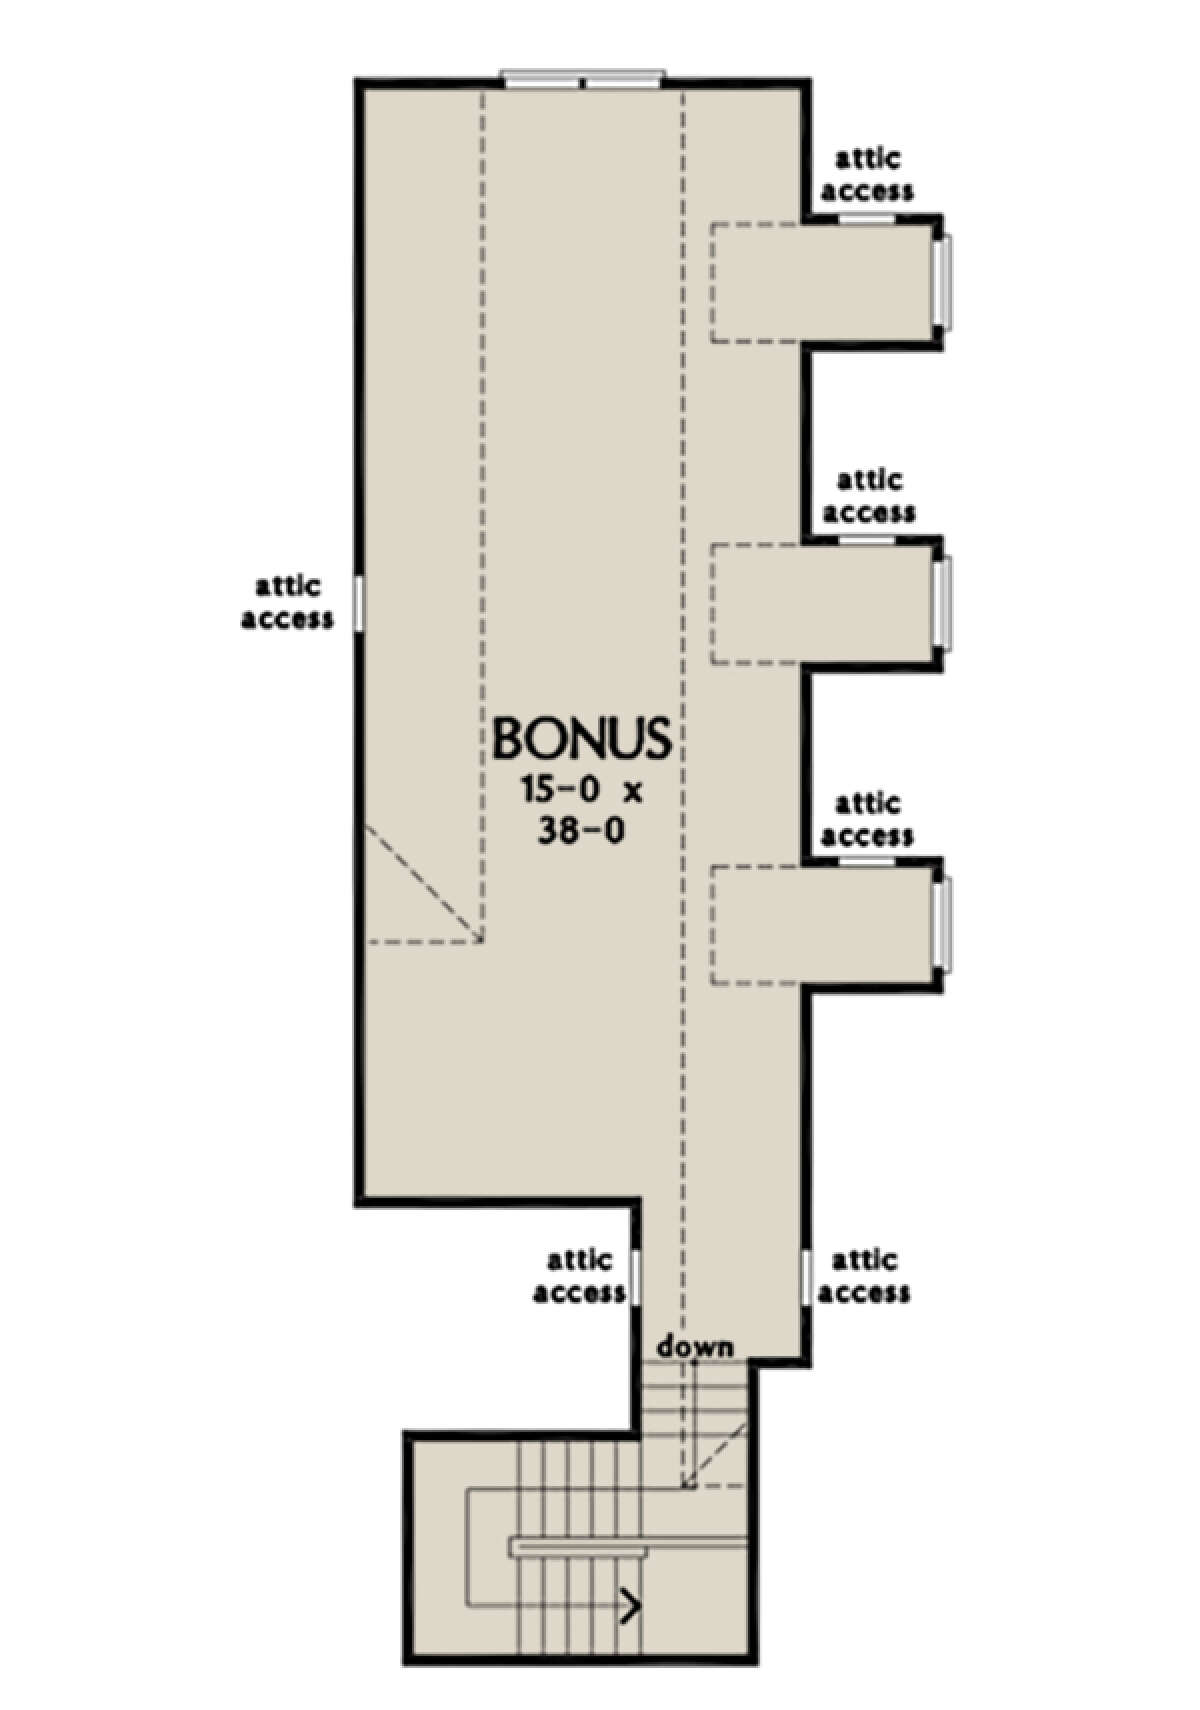 Bonus Room for House Plan #2865-00014